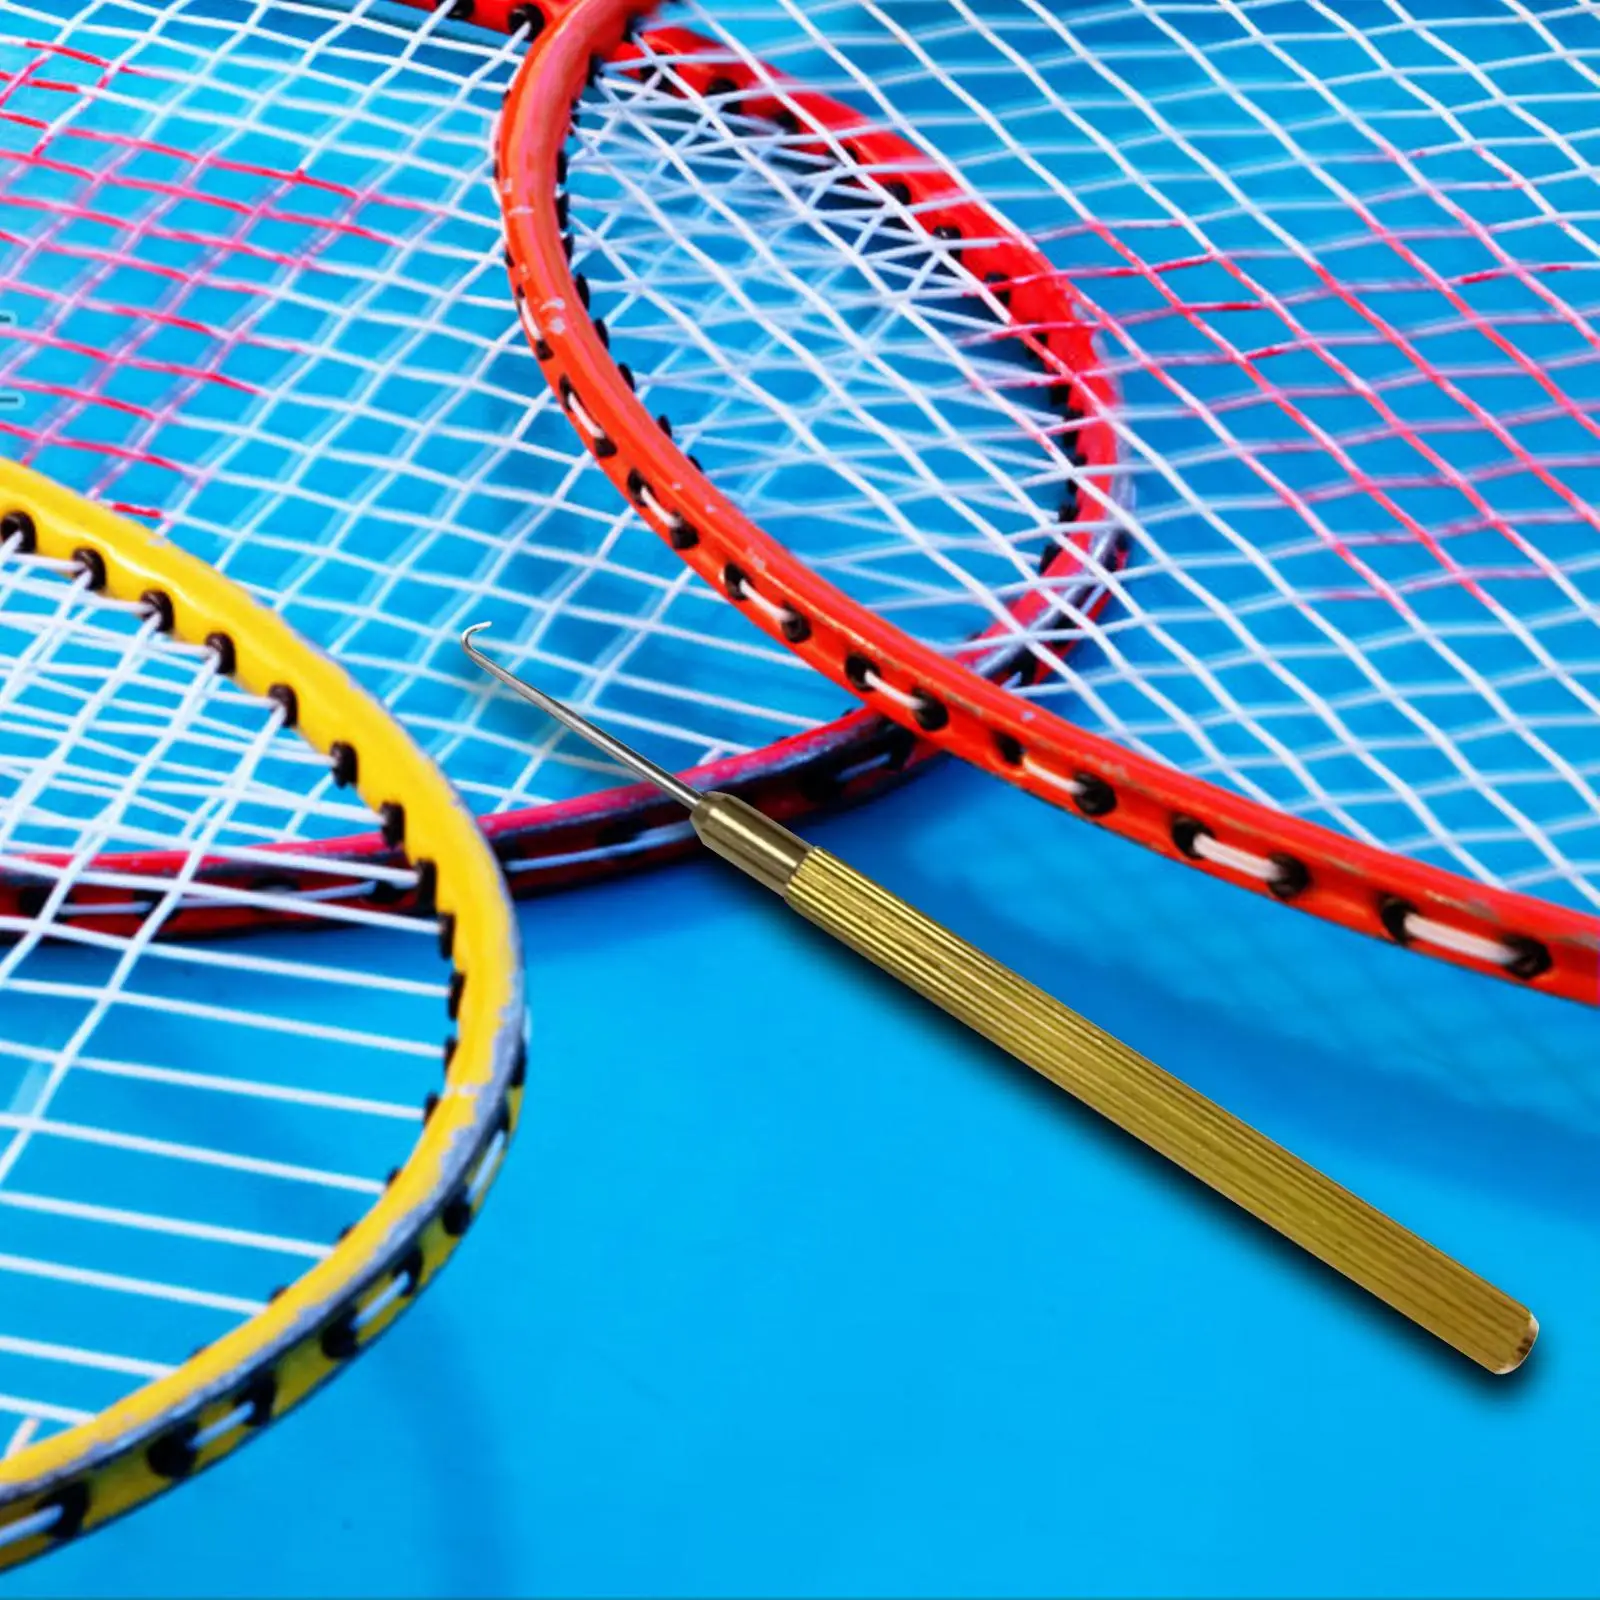 

Ракетка для бадминтона, семейный Съемник теннисных ракеток, удобный в использовании крючок для ремонта и навязывания, для занятий теннисными видами спорта